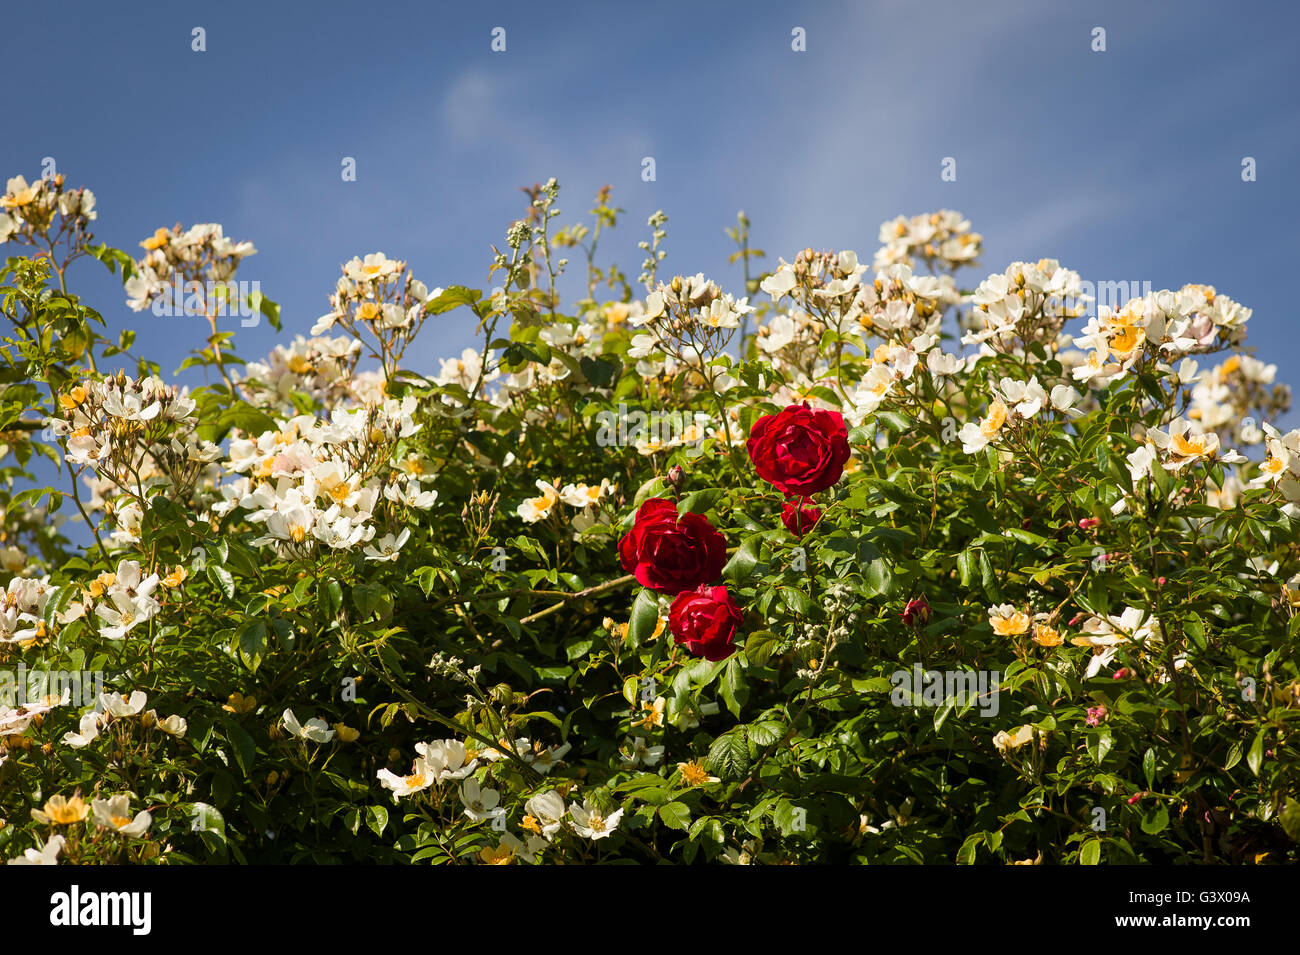 Rote rose Danse de Feu erscheint mitten in eine Masse von cremig weißen Blüten oder Rosa Hochzeitstag Stockfoto